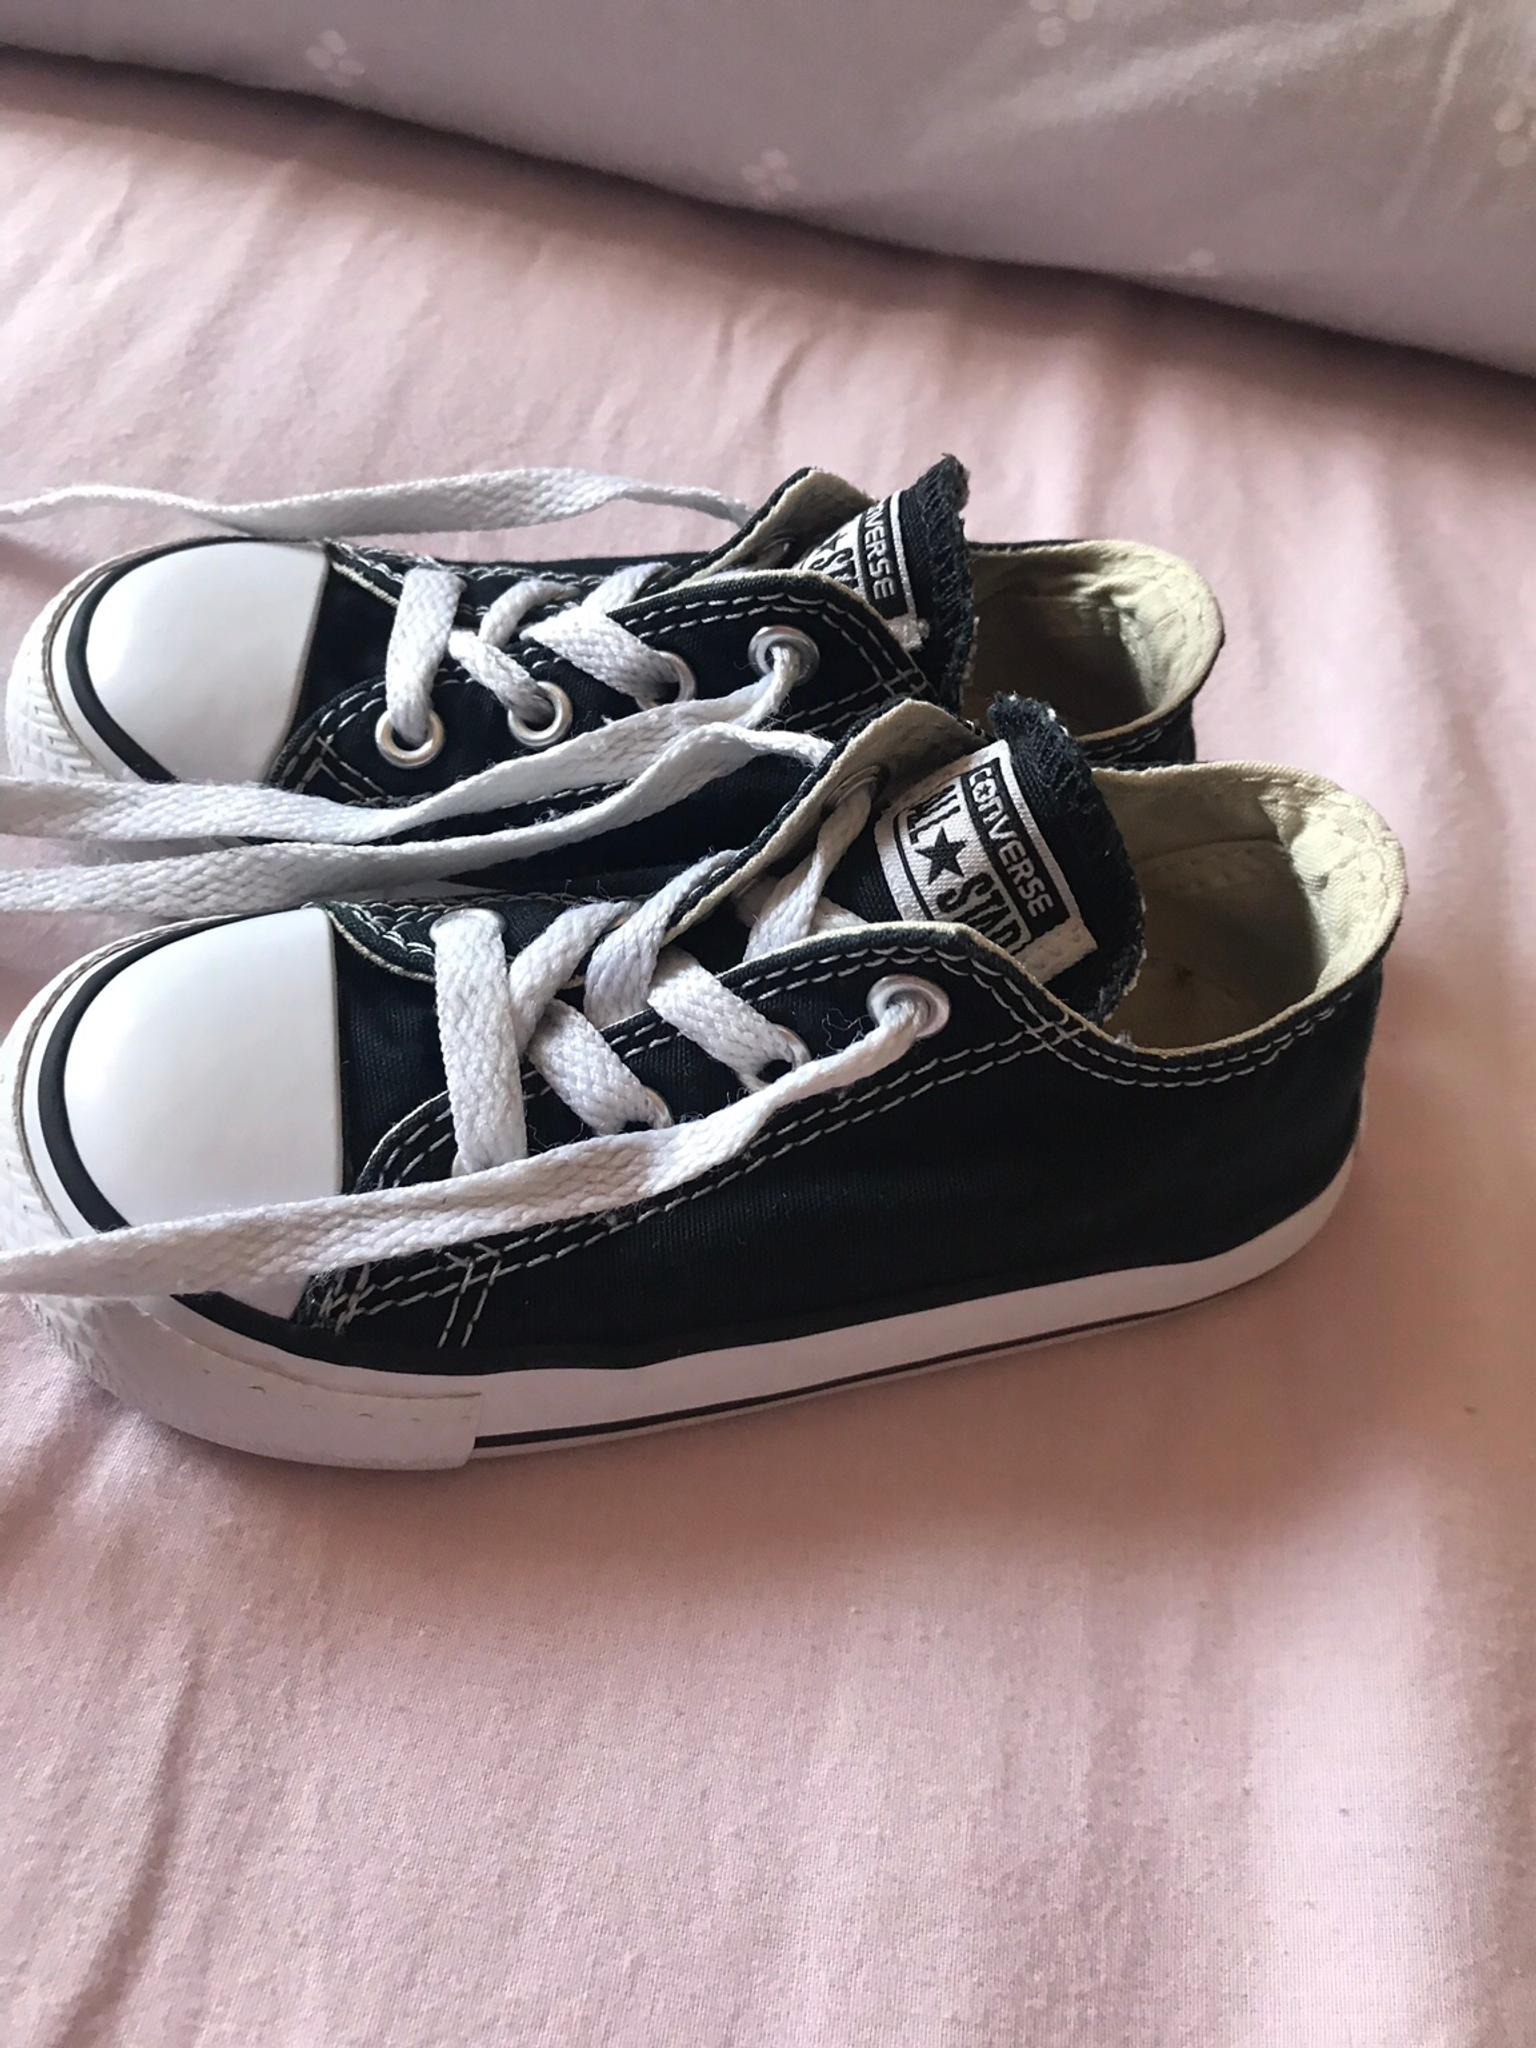 black converse infant size 7